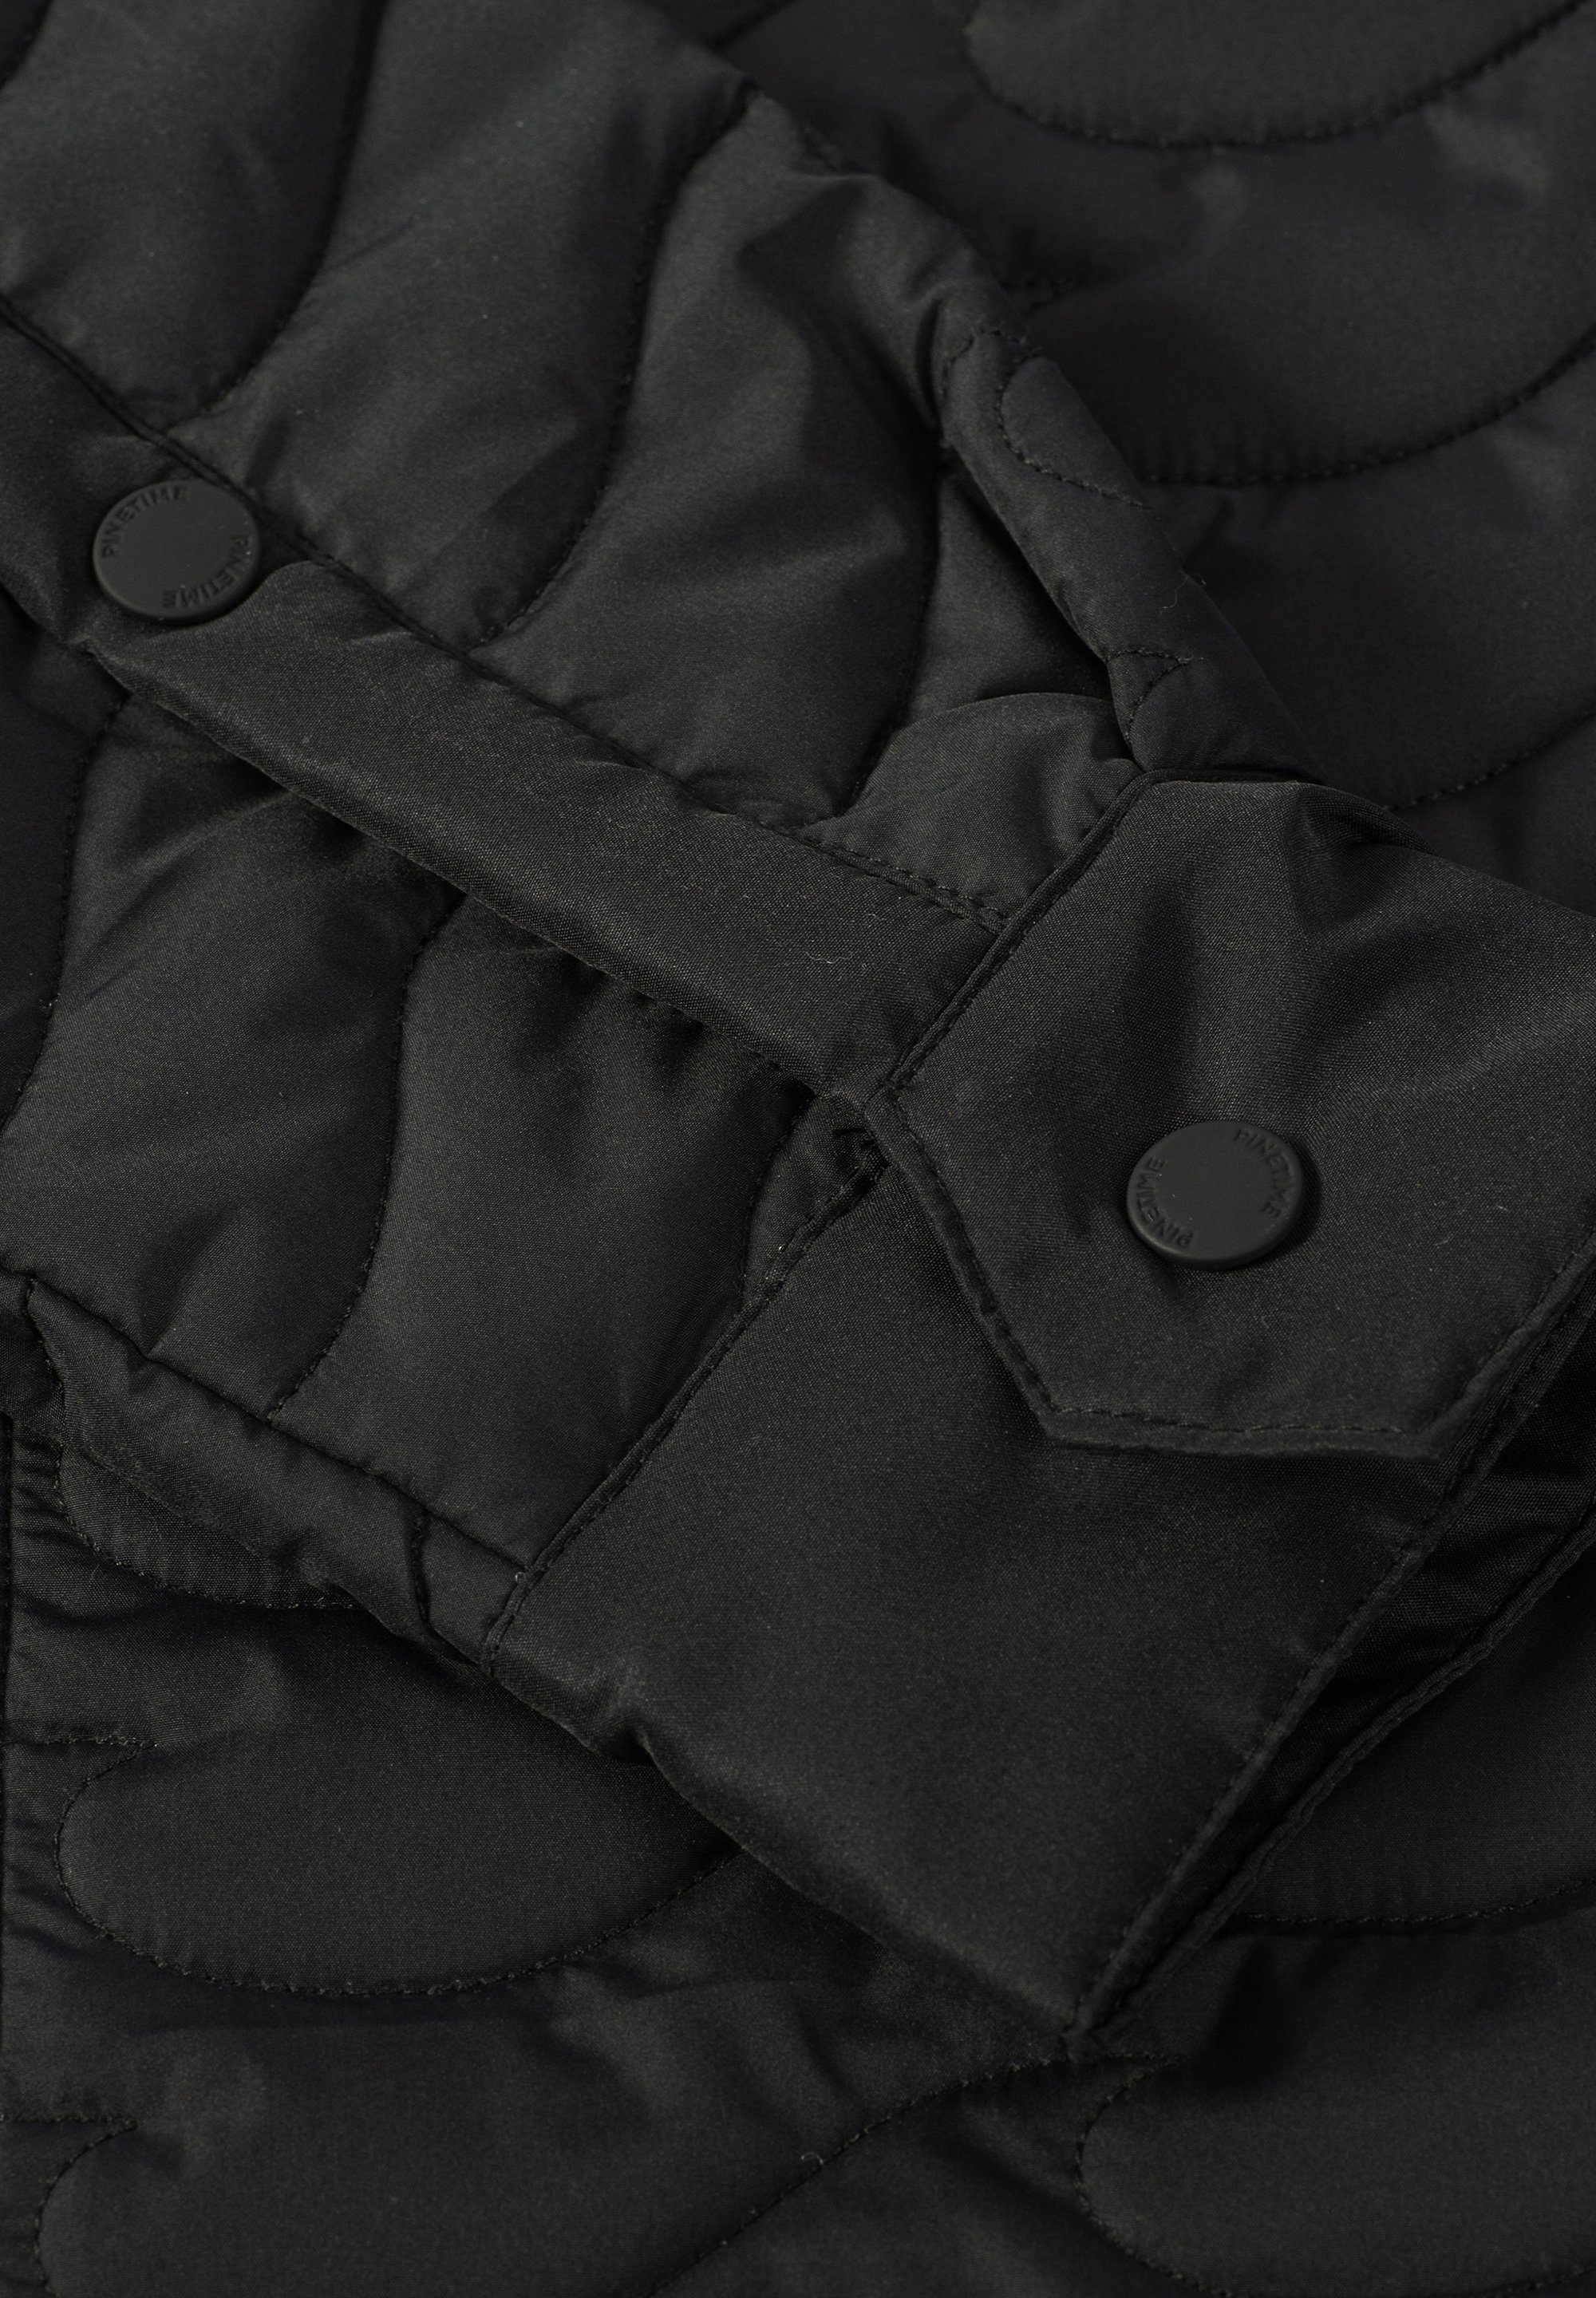 Pinetime Sie Hemdjacke warm gekleidet. isolierten Steppjacke unserer New Clothing Mit stilvoll Jacket schwarz sind Insulated Wave und